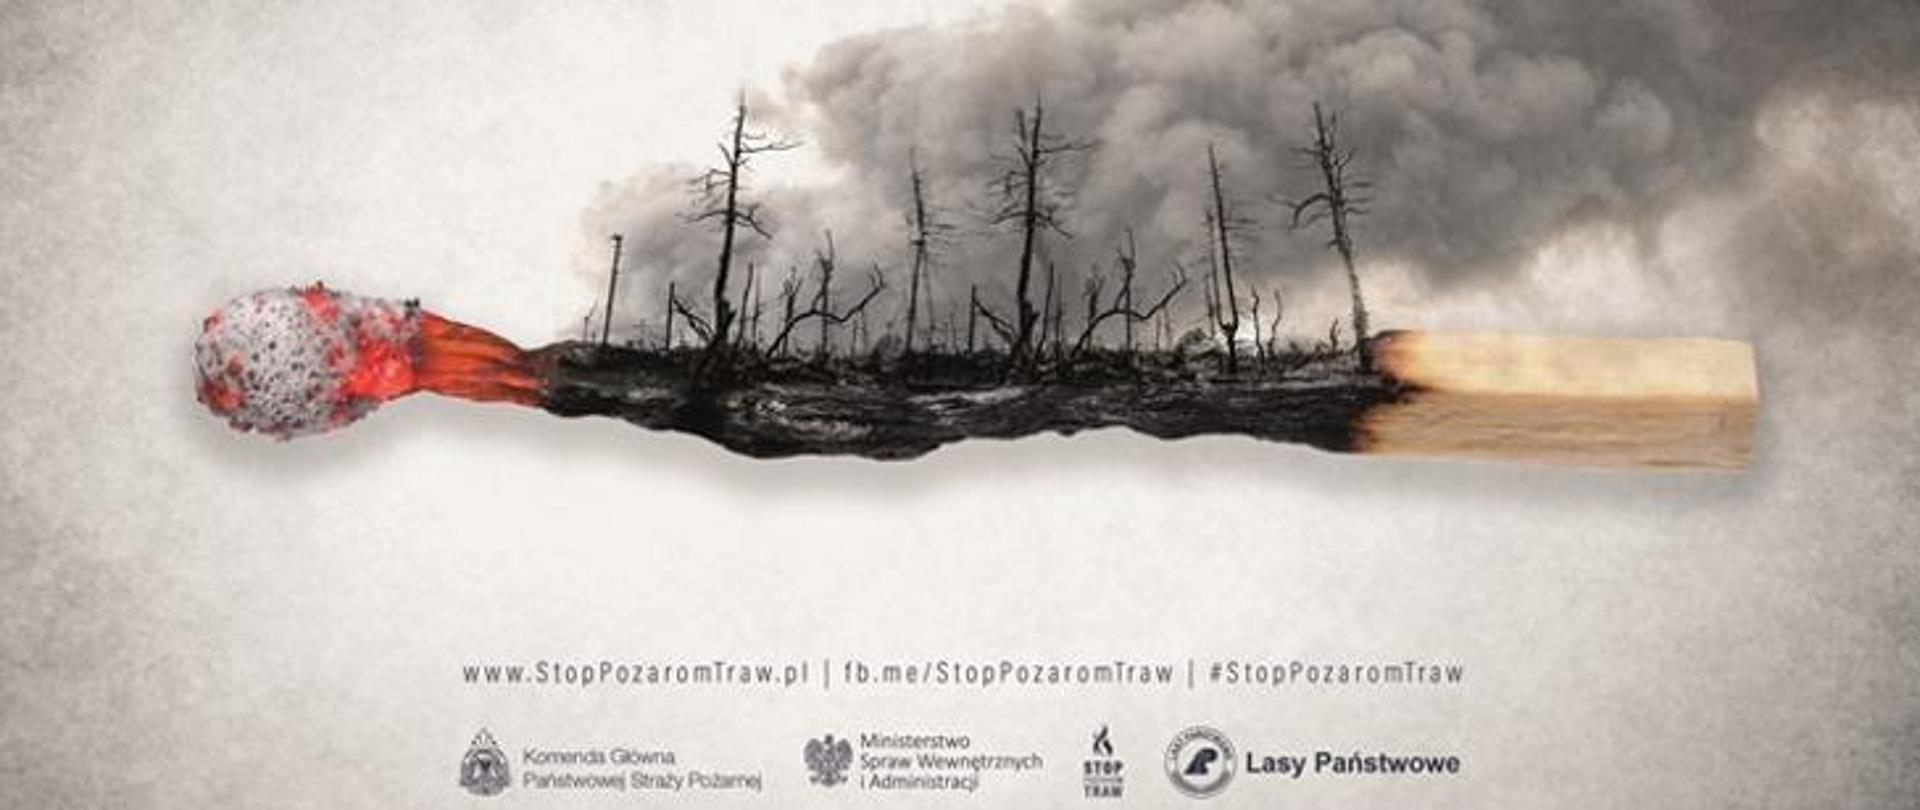 Zdjęcie plakatowe kampanii społecznej stop pożarom traw